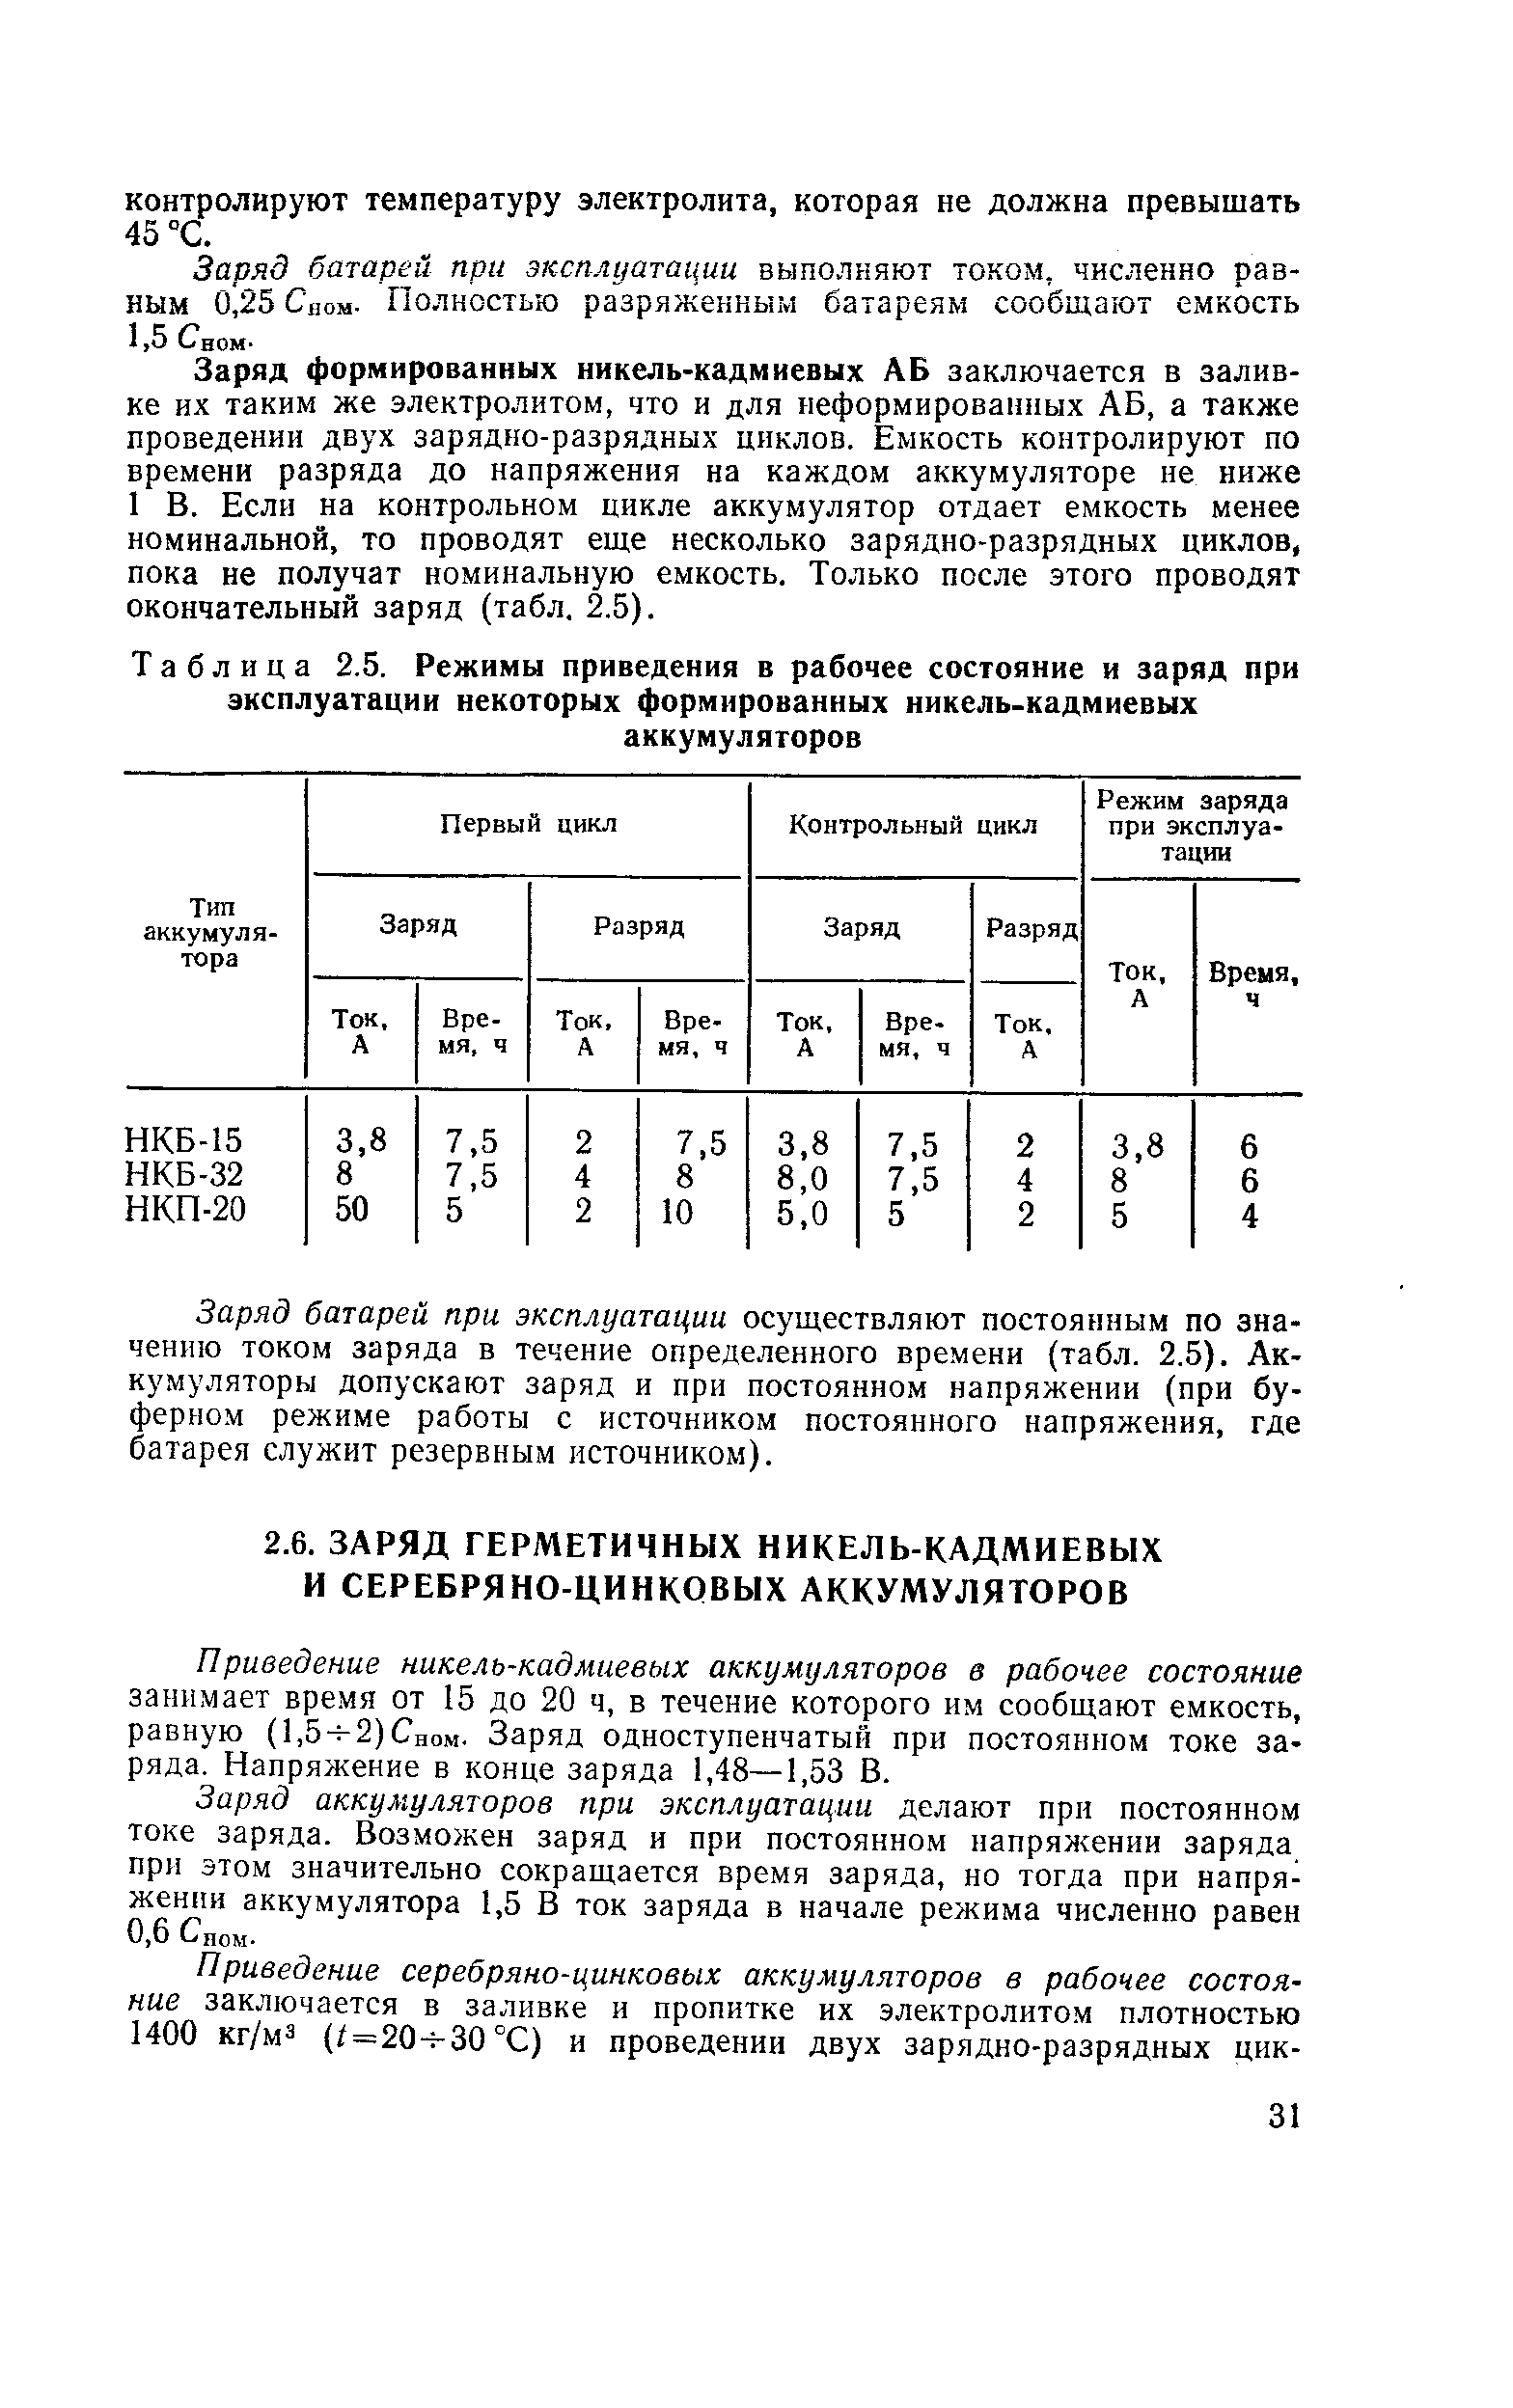 Таблица 2.5. Режимы приведения в рабочее состояние и заряд при эксплуатации некоторых формированных никель-кадмиевых аккумуляторов
